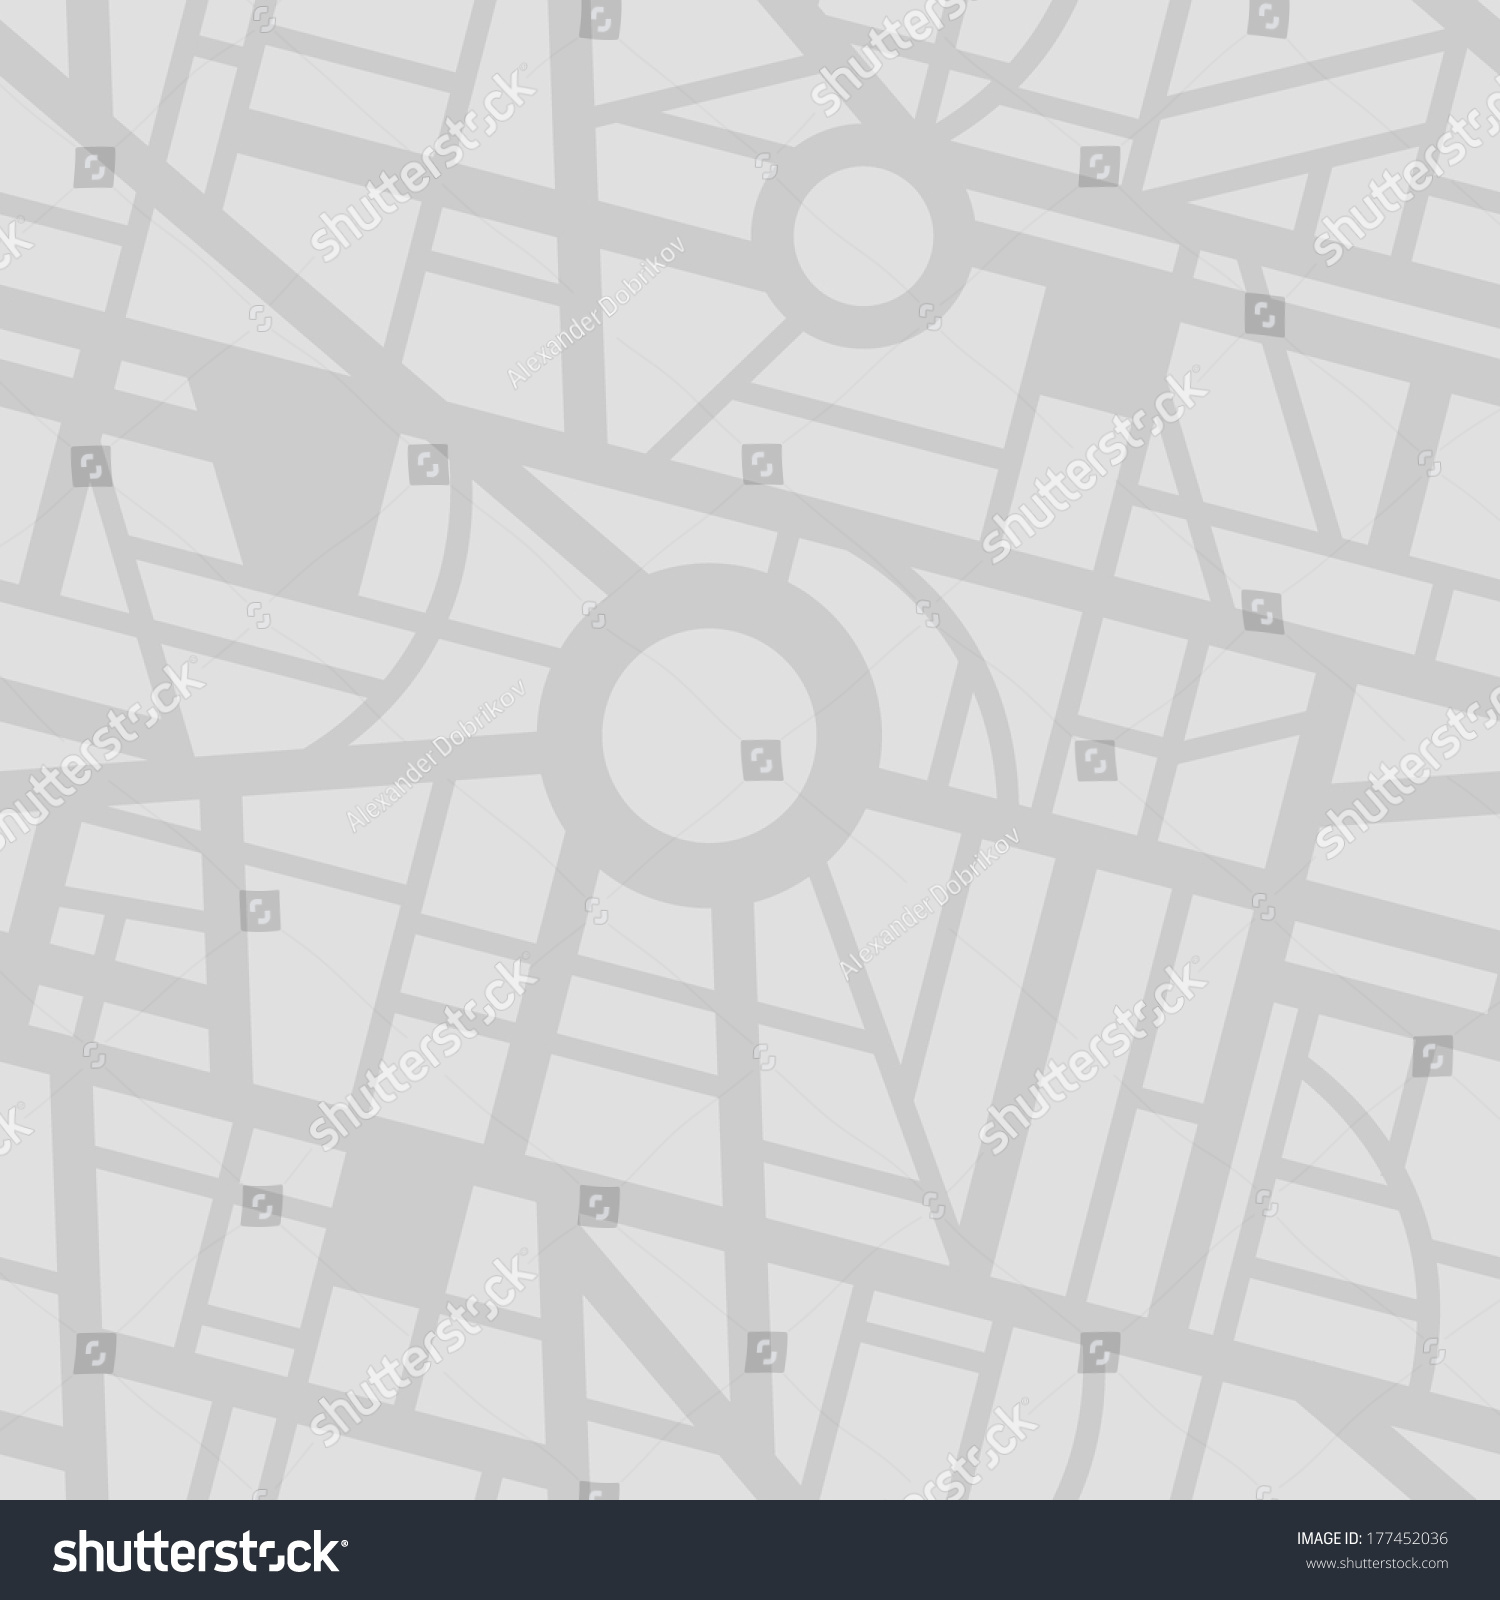 Seamless city map pattern #177452036